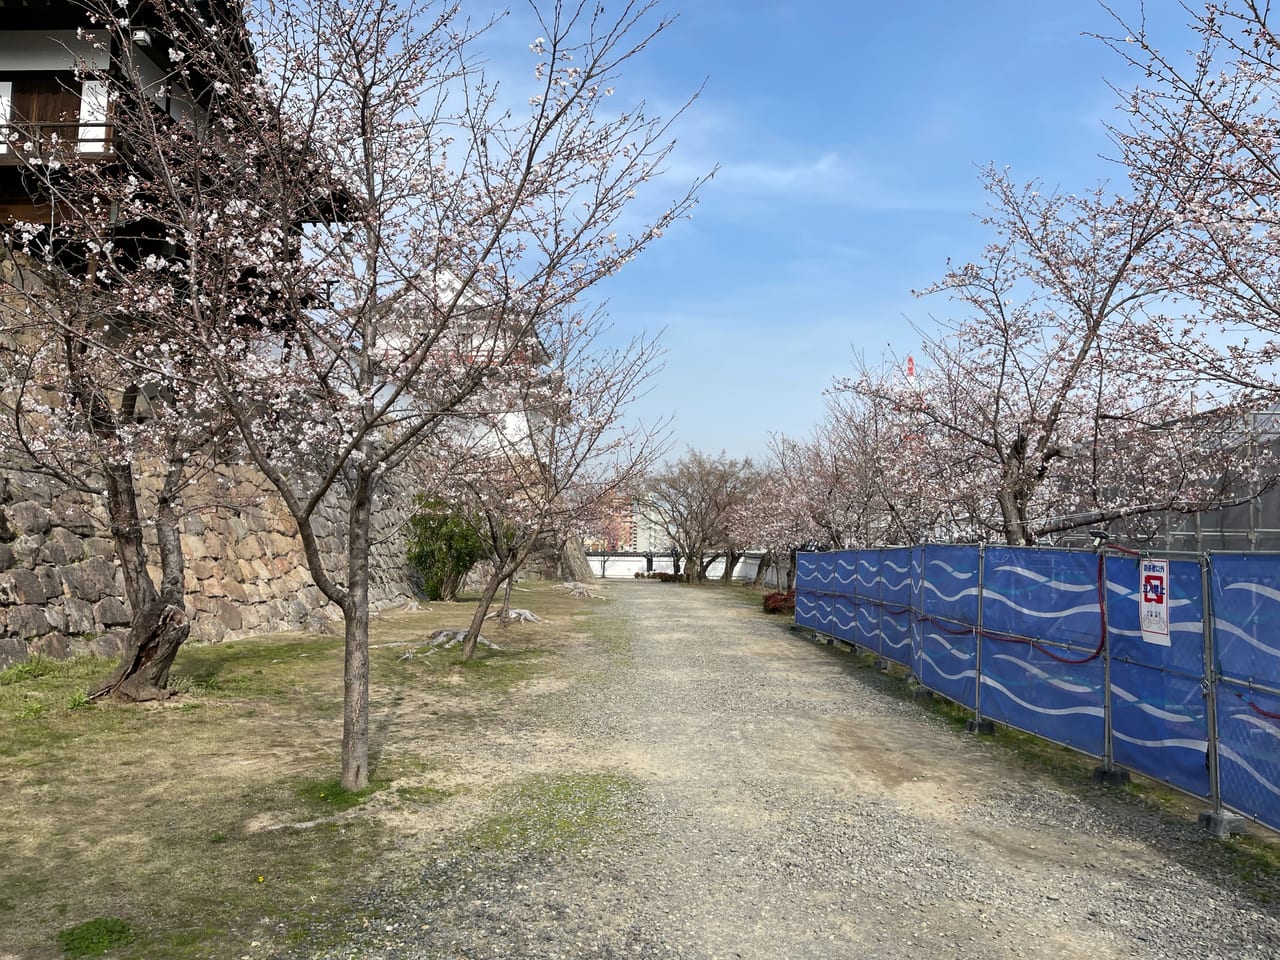 福山市立福山城博物館の桜が開花しています